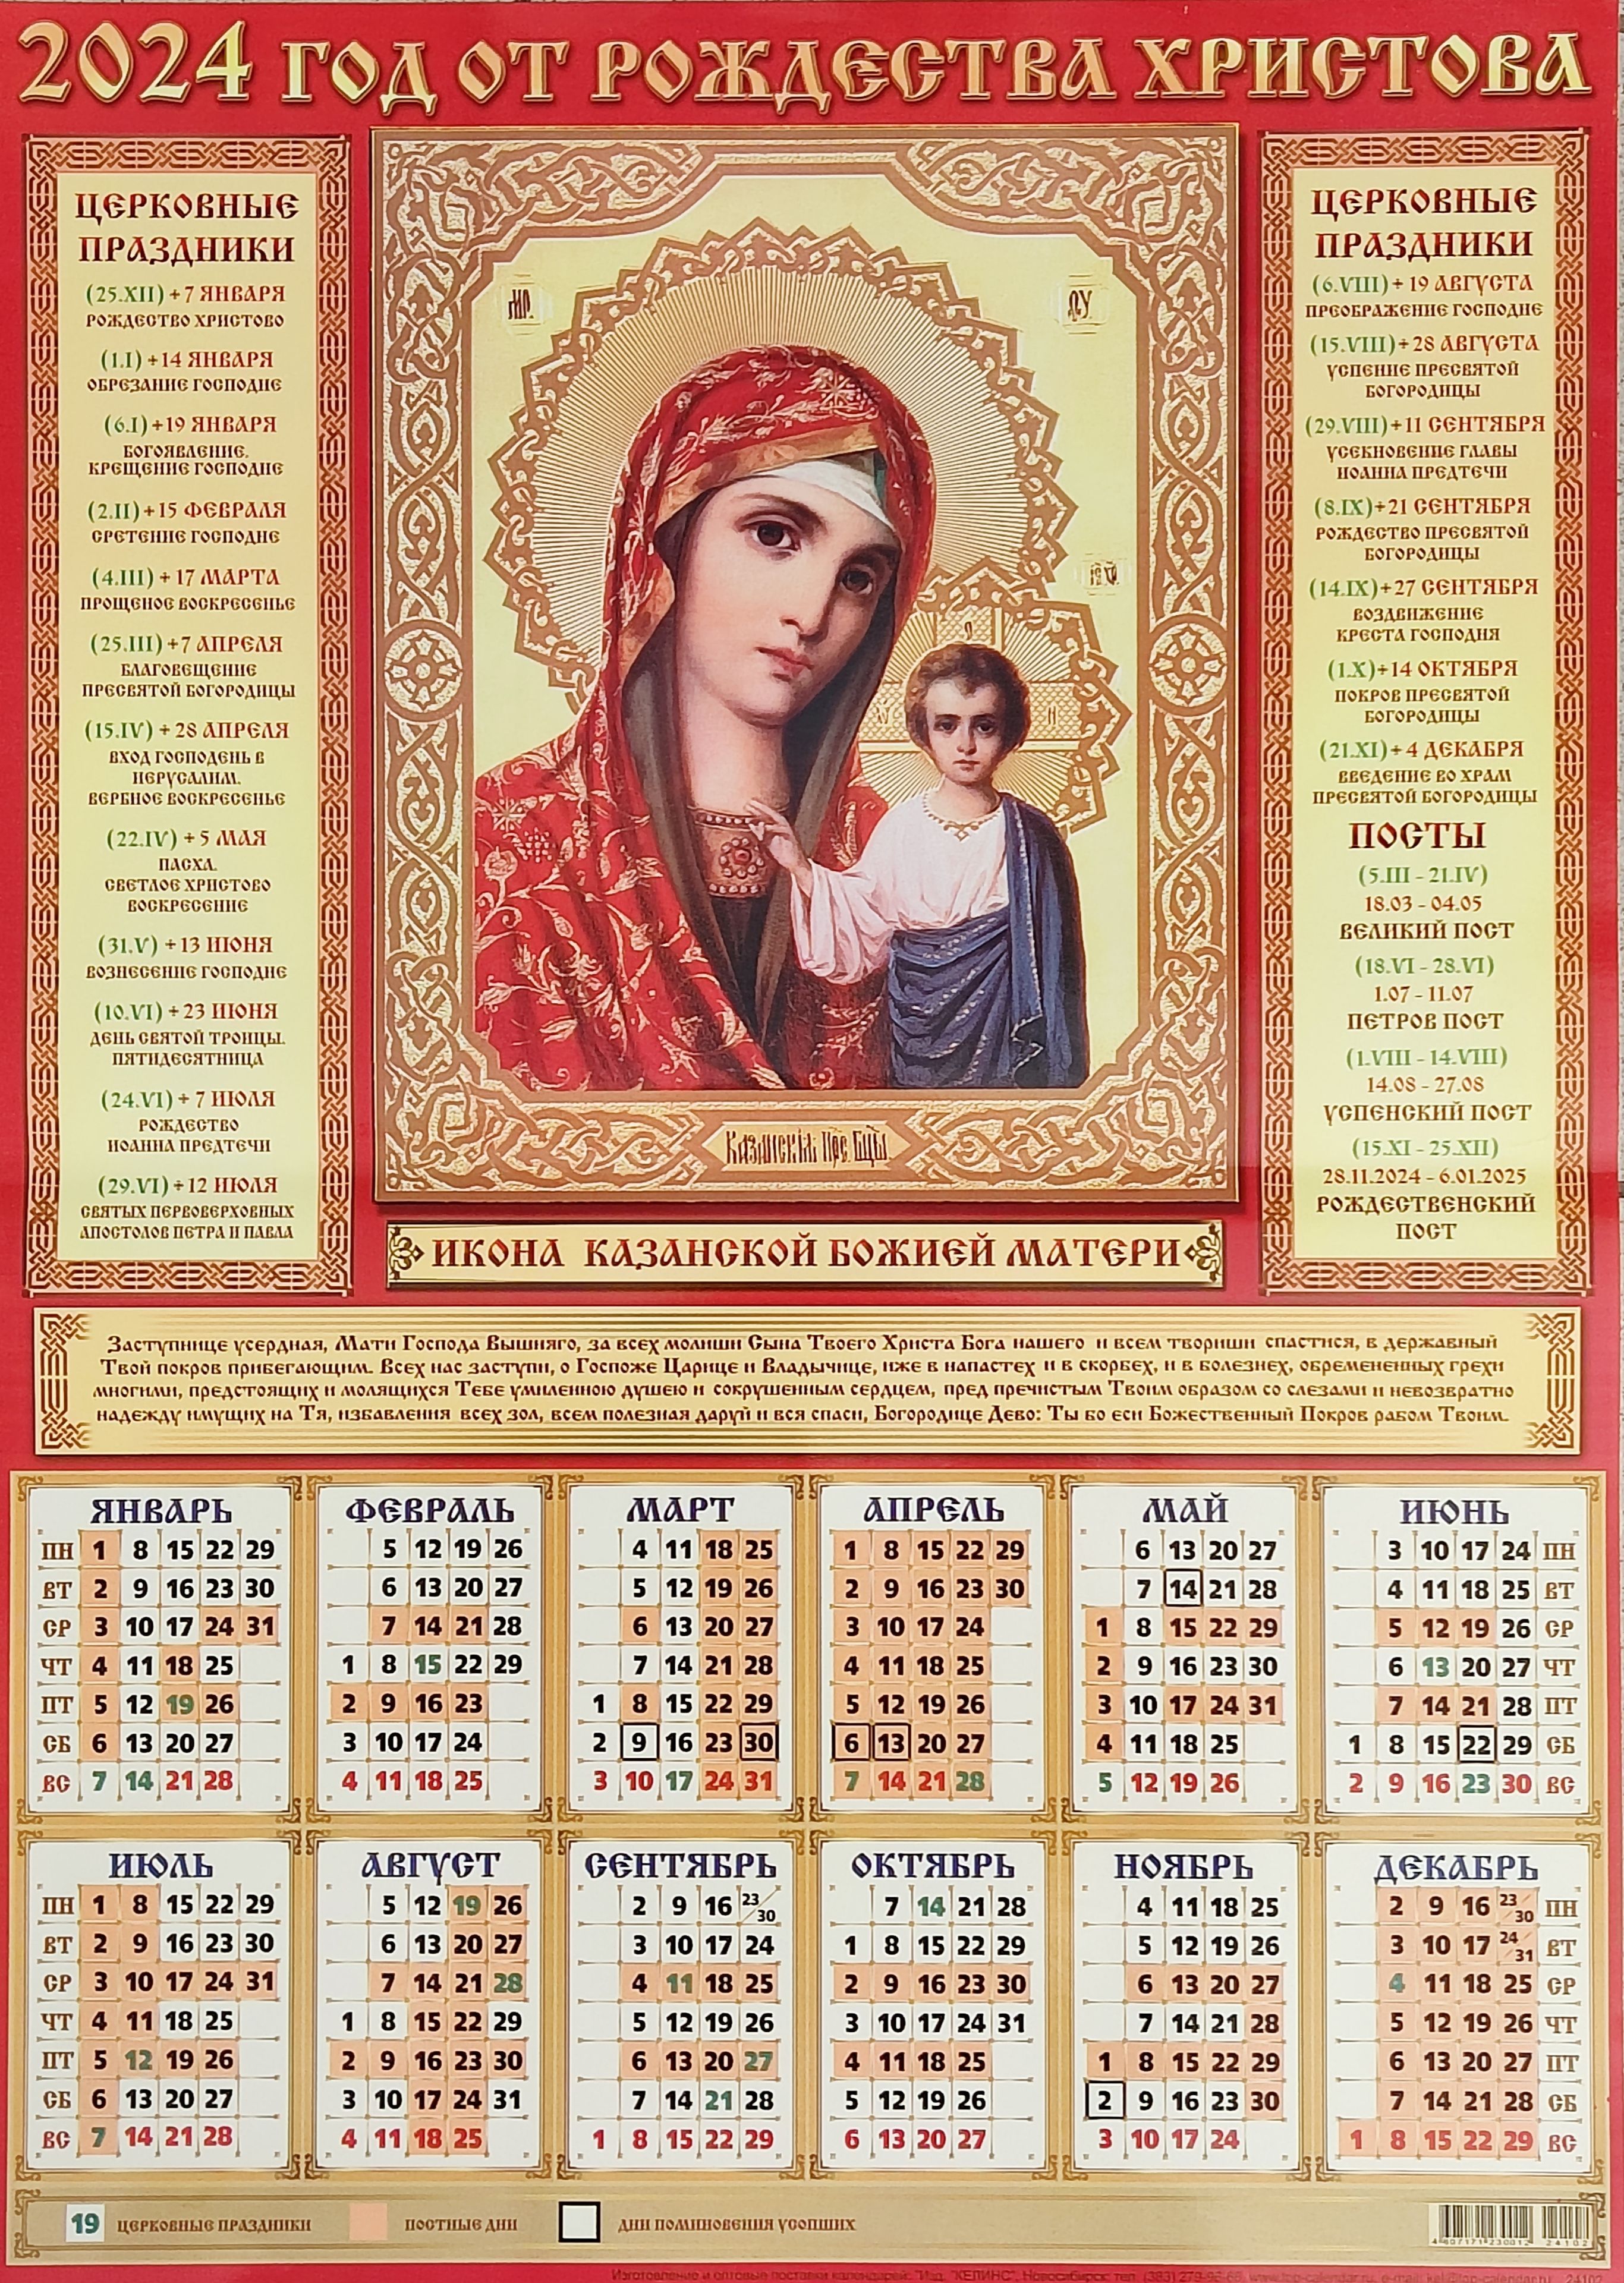 20 апреля 2024 православный праздник. Календарь с иконами 2024. Православный календарь на 2024 год. Православный календарь с иконами 2024. Календарь листовой 2023.